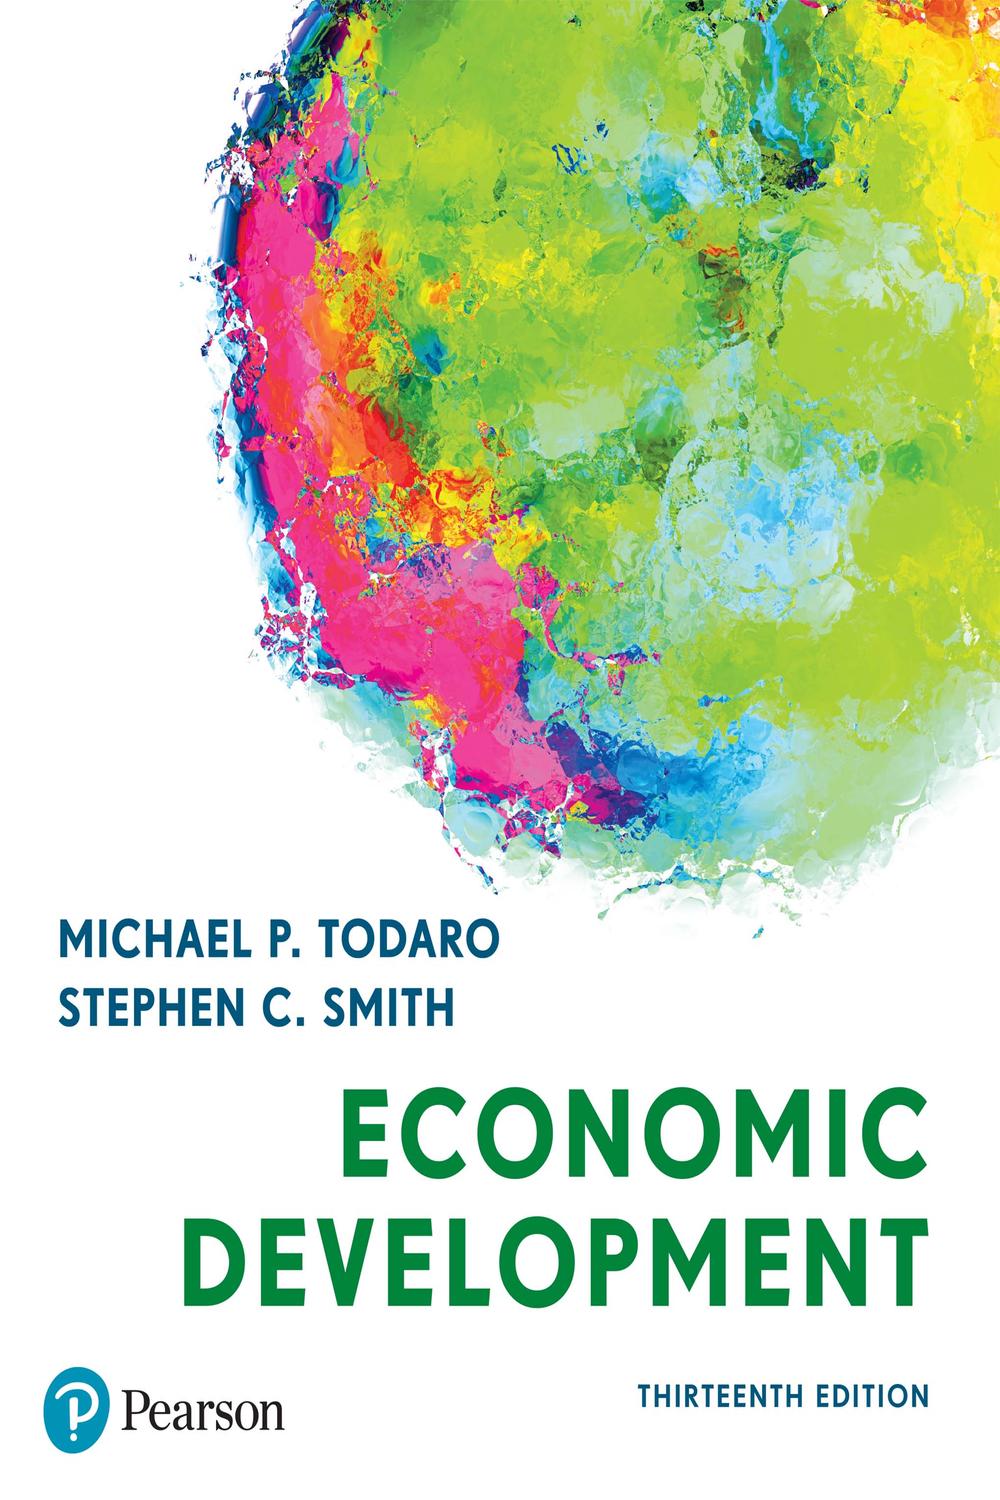 Economic Development - Michael Todaro, Stephen Smith